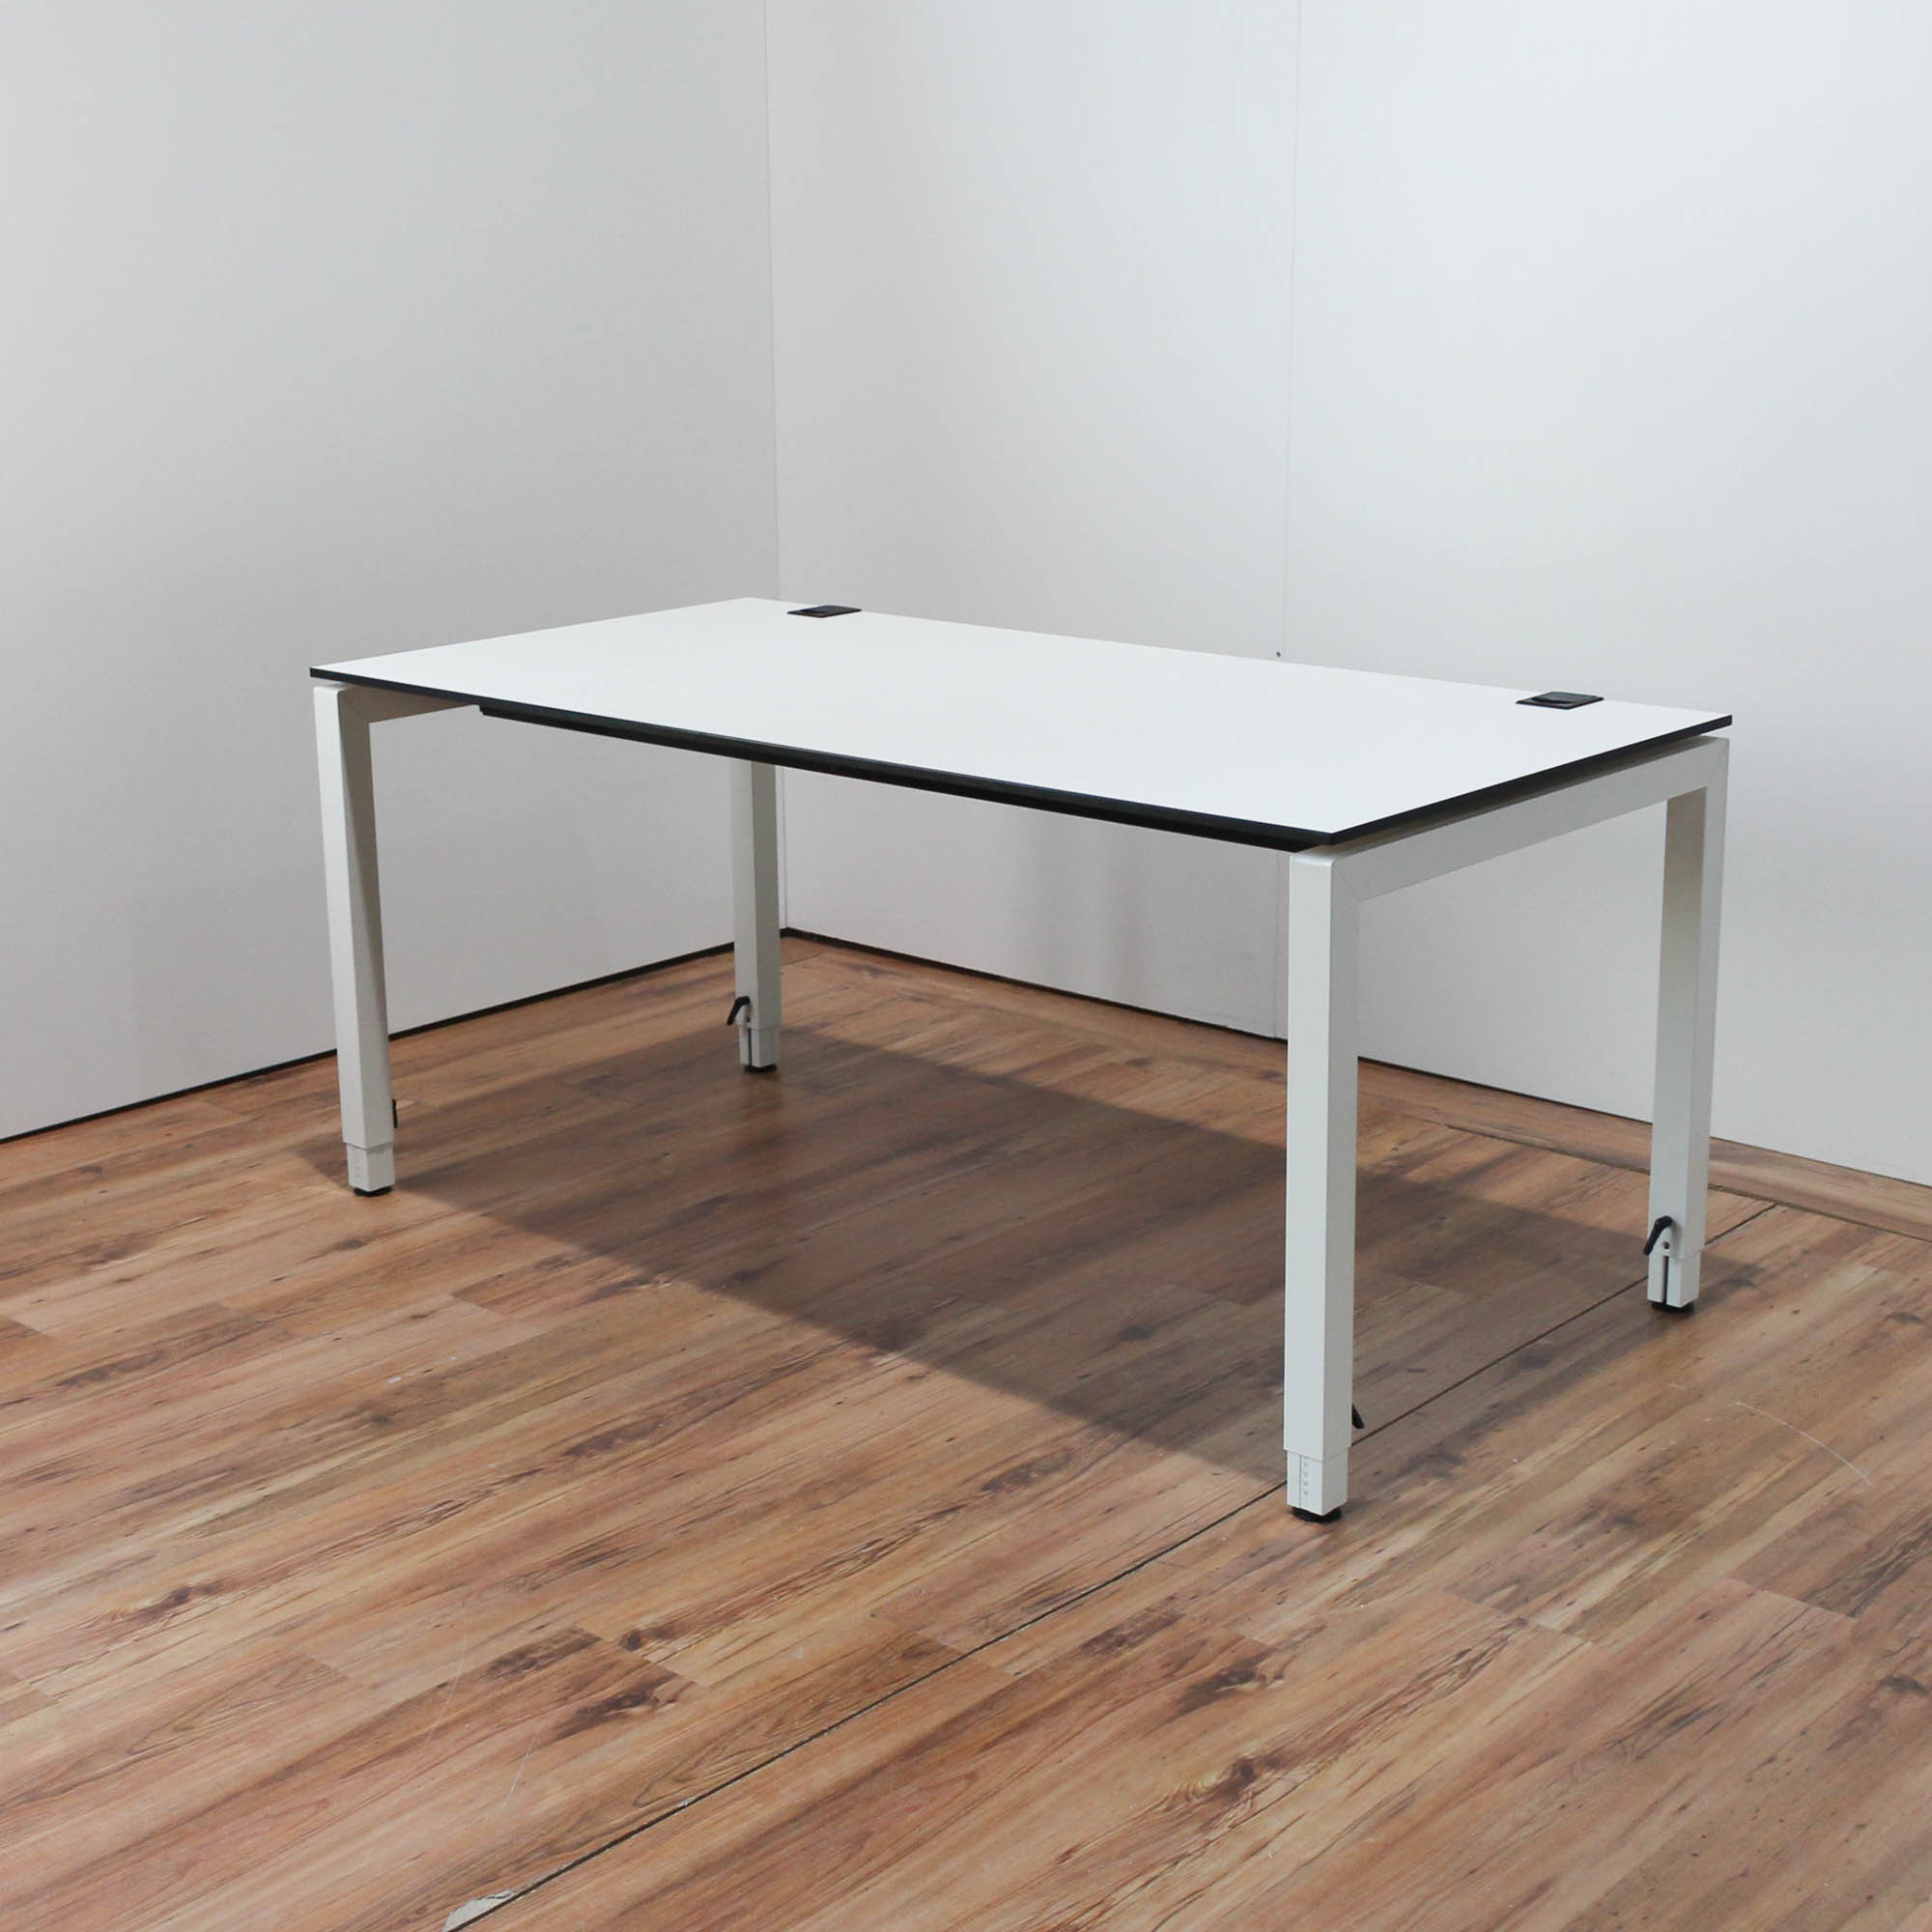 Miete: Samas Schreibtisch - 160x80cm in weiß - Tischkante schwarz - 4-Fußgestell weiß 